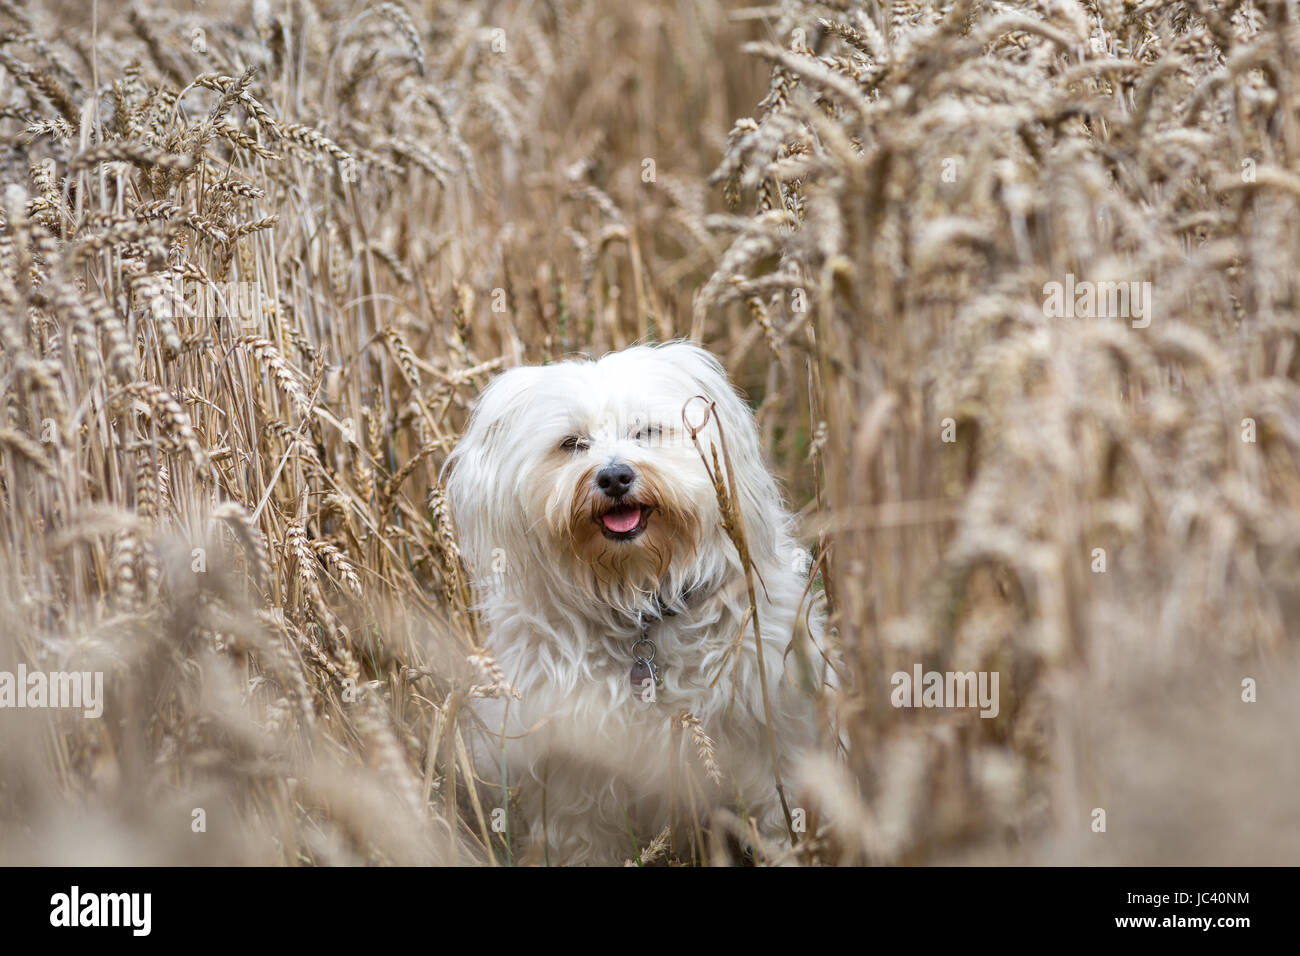 Kleiner weißer Hund sitzt in einem Kornfeld. Stock Photo